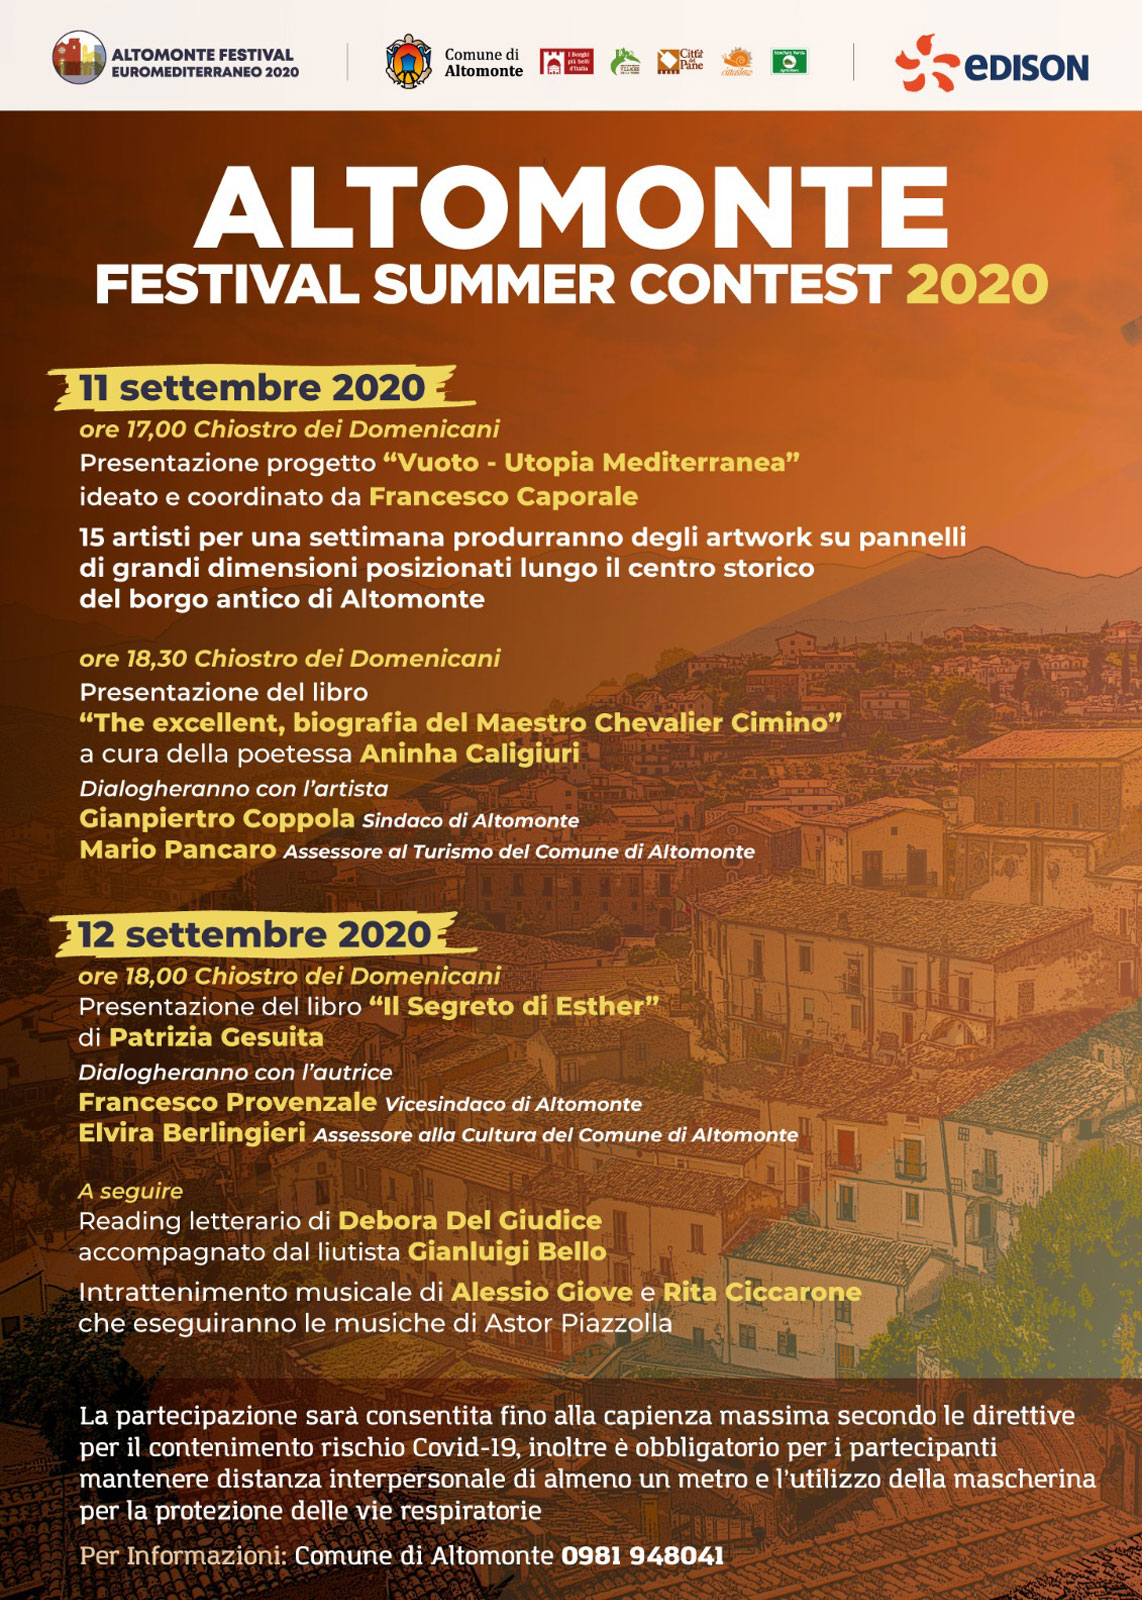 Altomonte Festival Summer Contest 2020 - Settembre